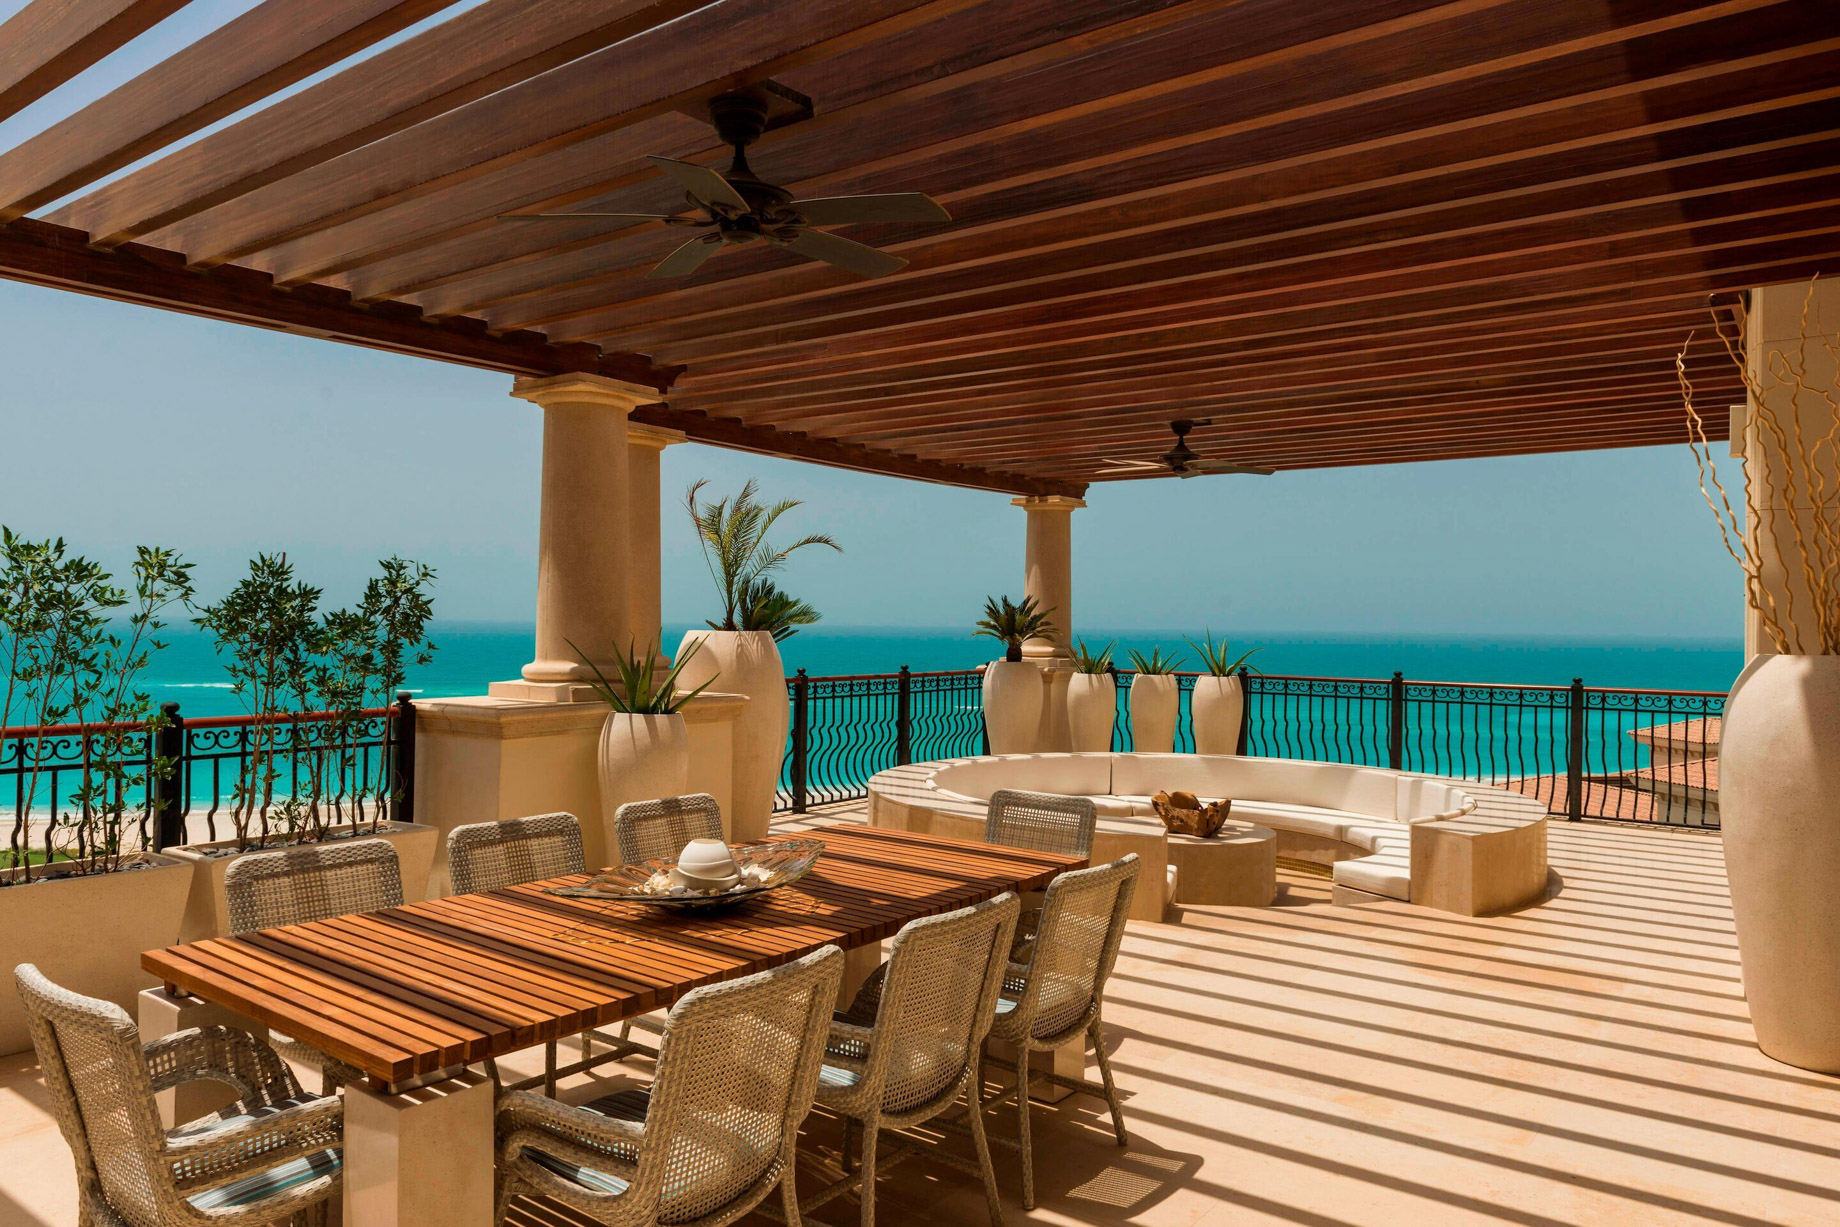 The St. Regis Saadiyat Island Resort - Abu Dhabi, UAE - Royal Suite Ocean View Terrace